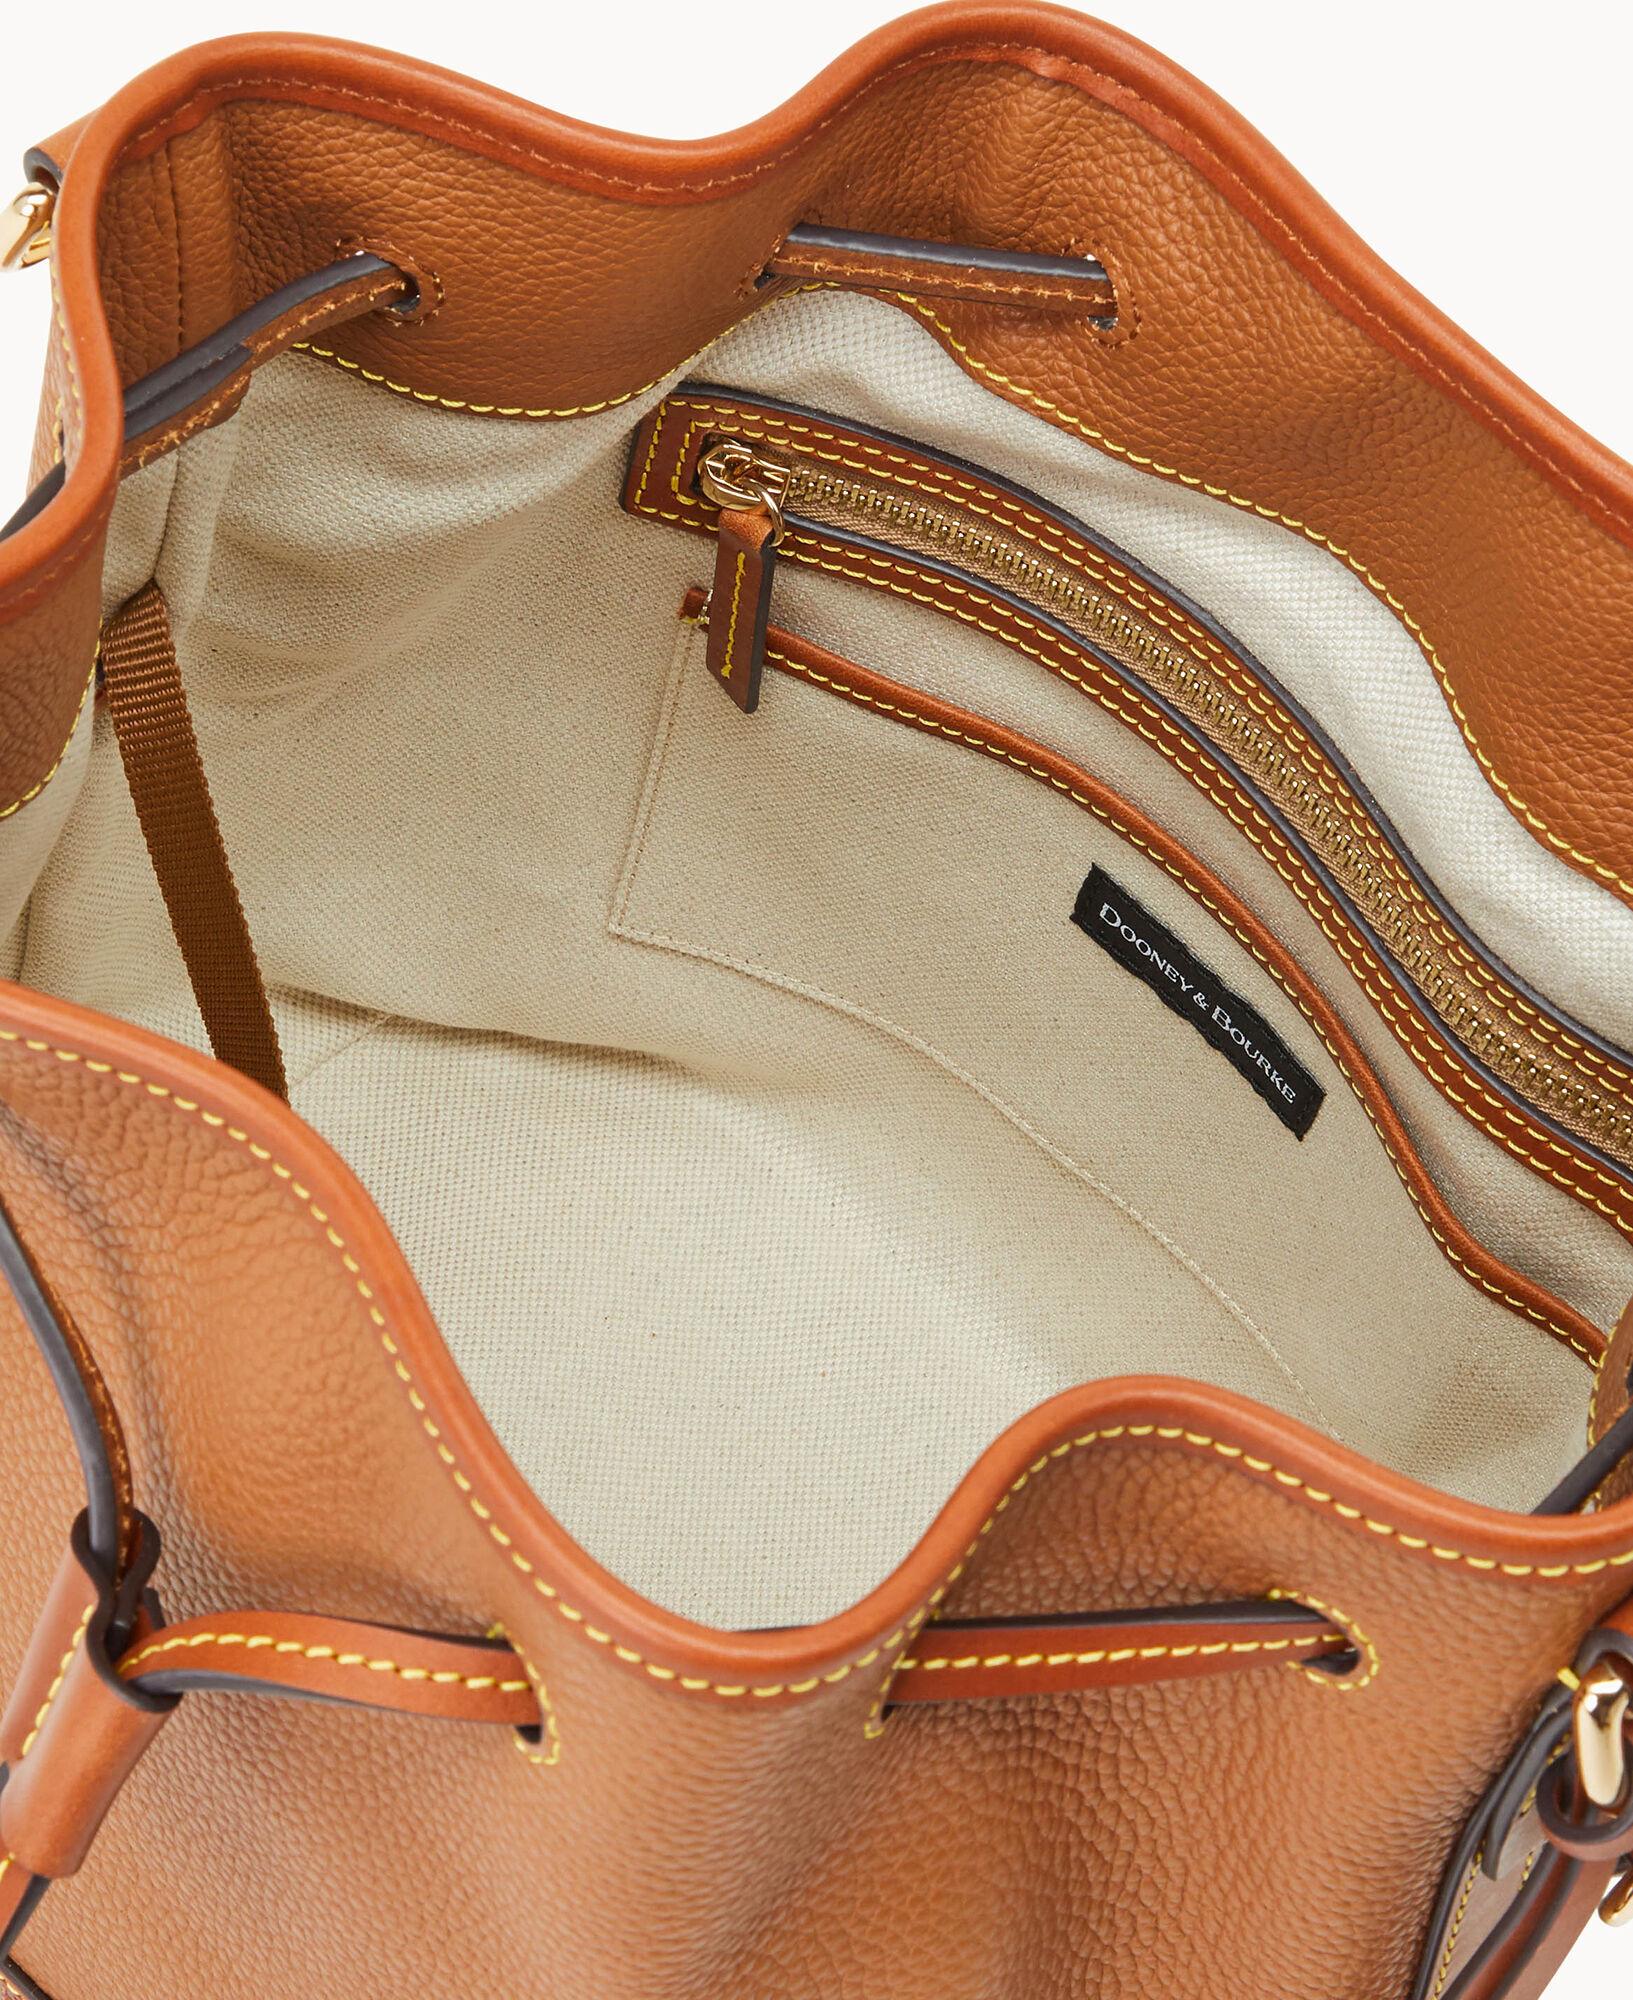 Dooney & Bourke Dillen Drawstring Shoulder Bag